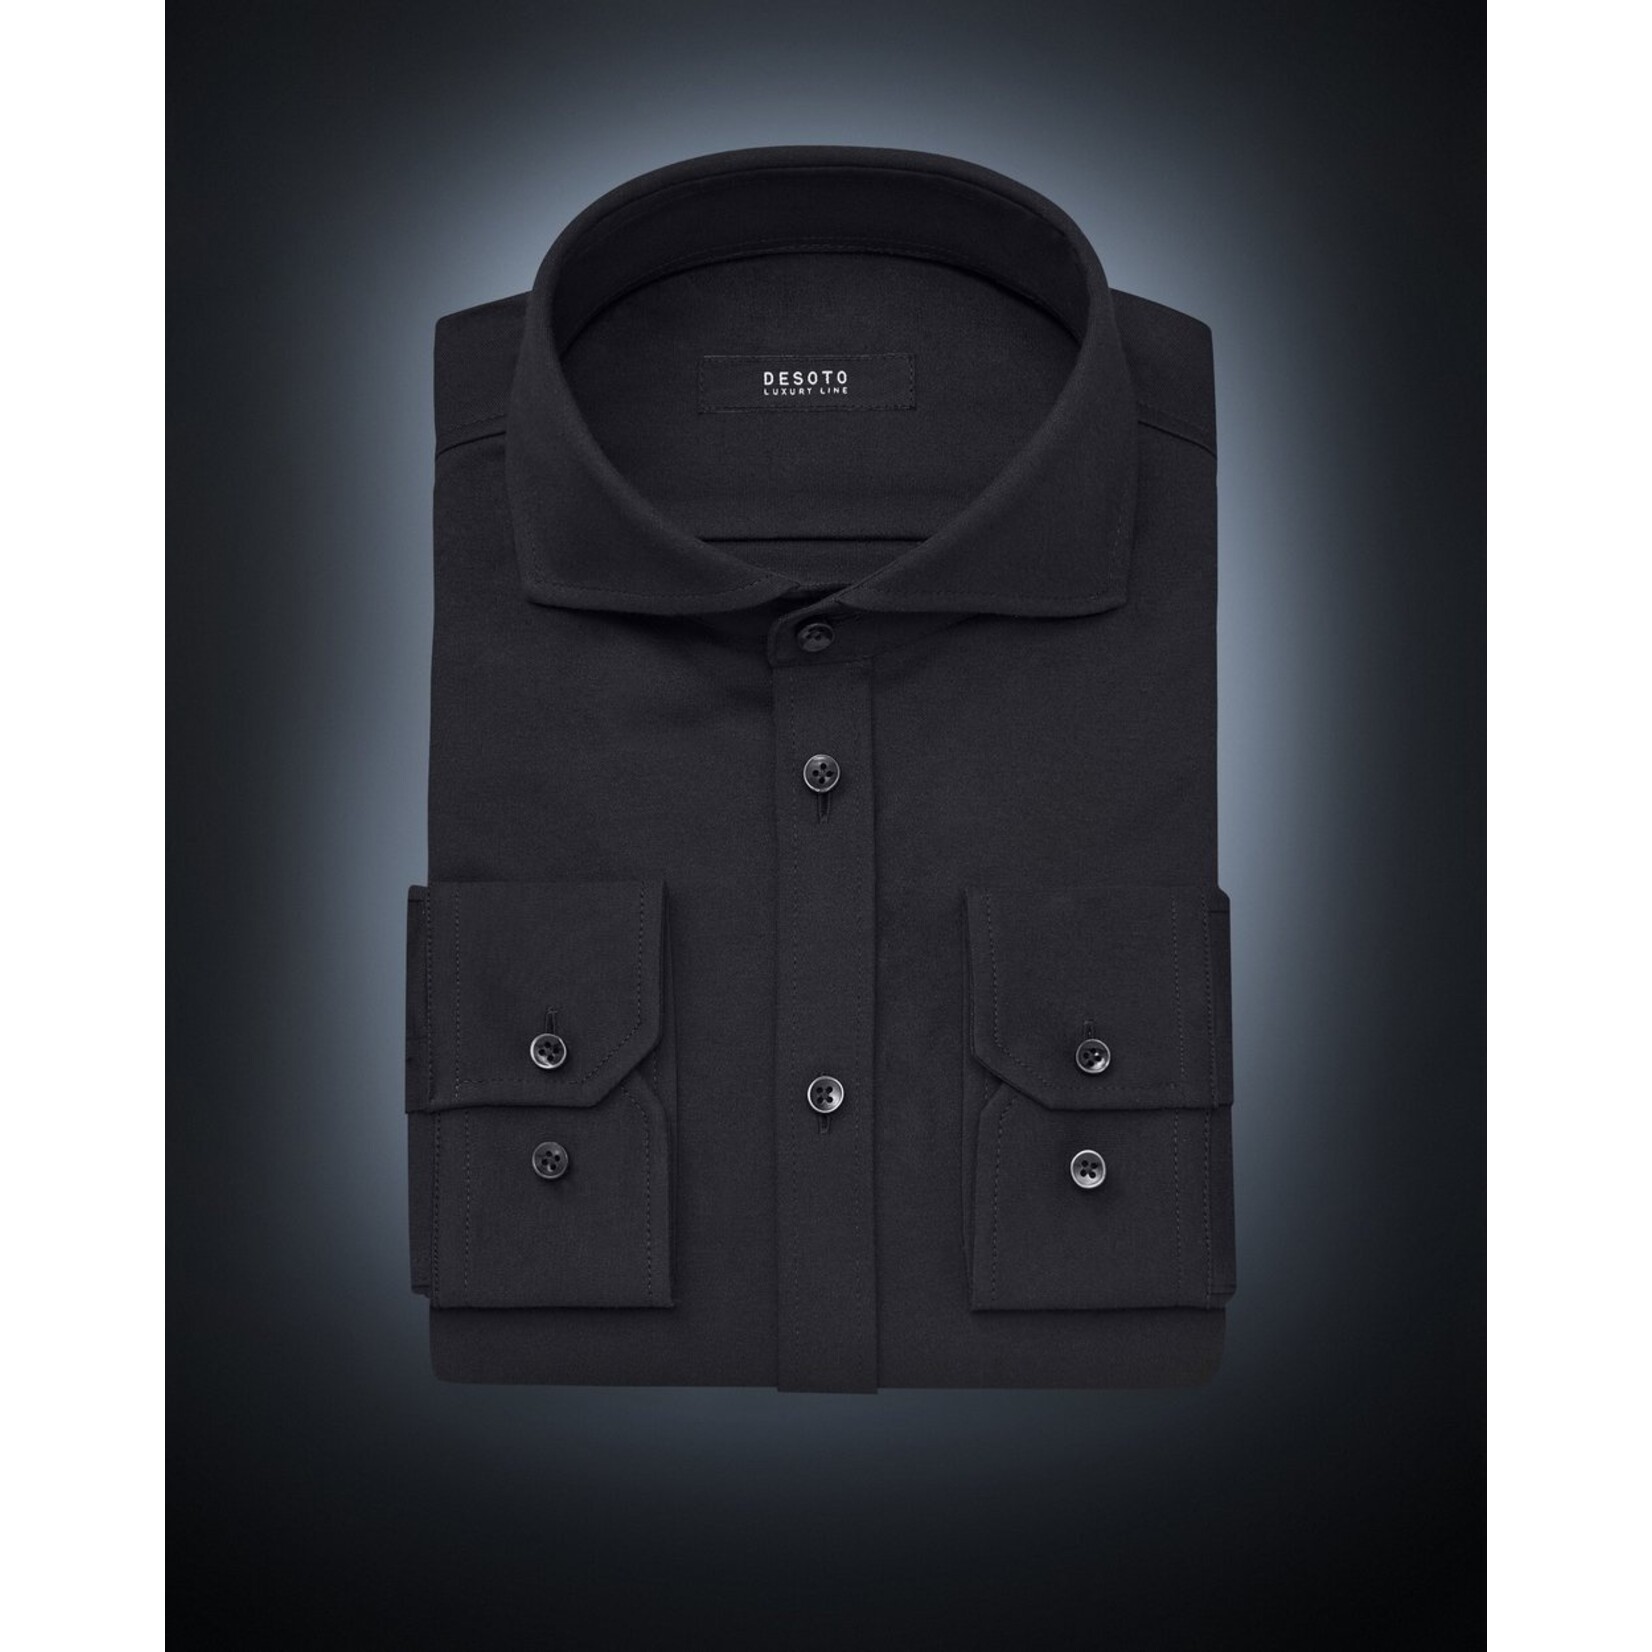 Desoto Luxury jersey overhemd zwart